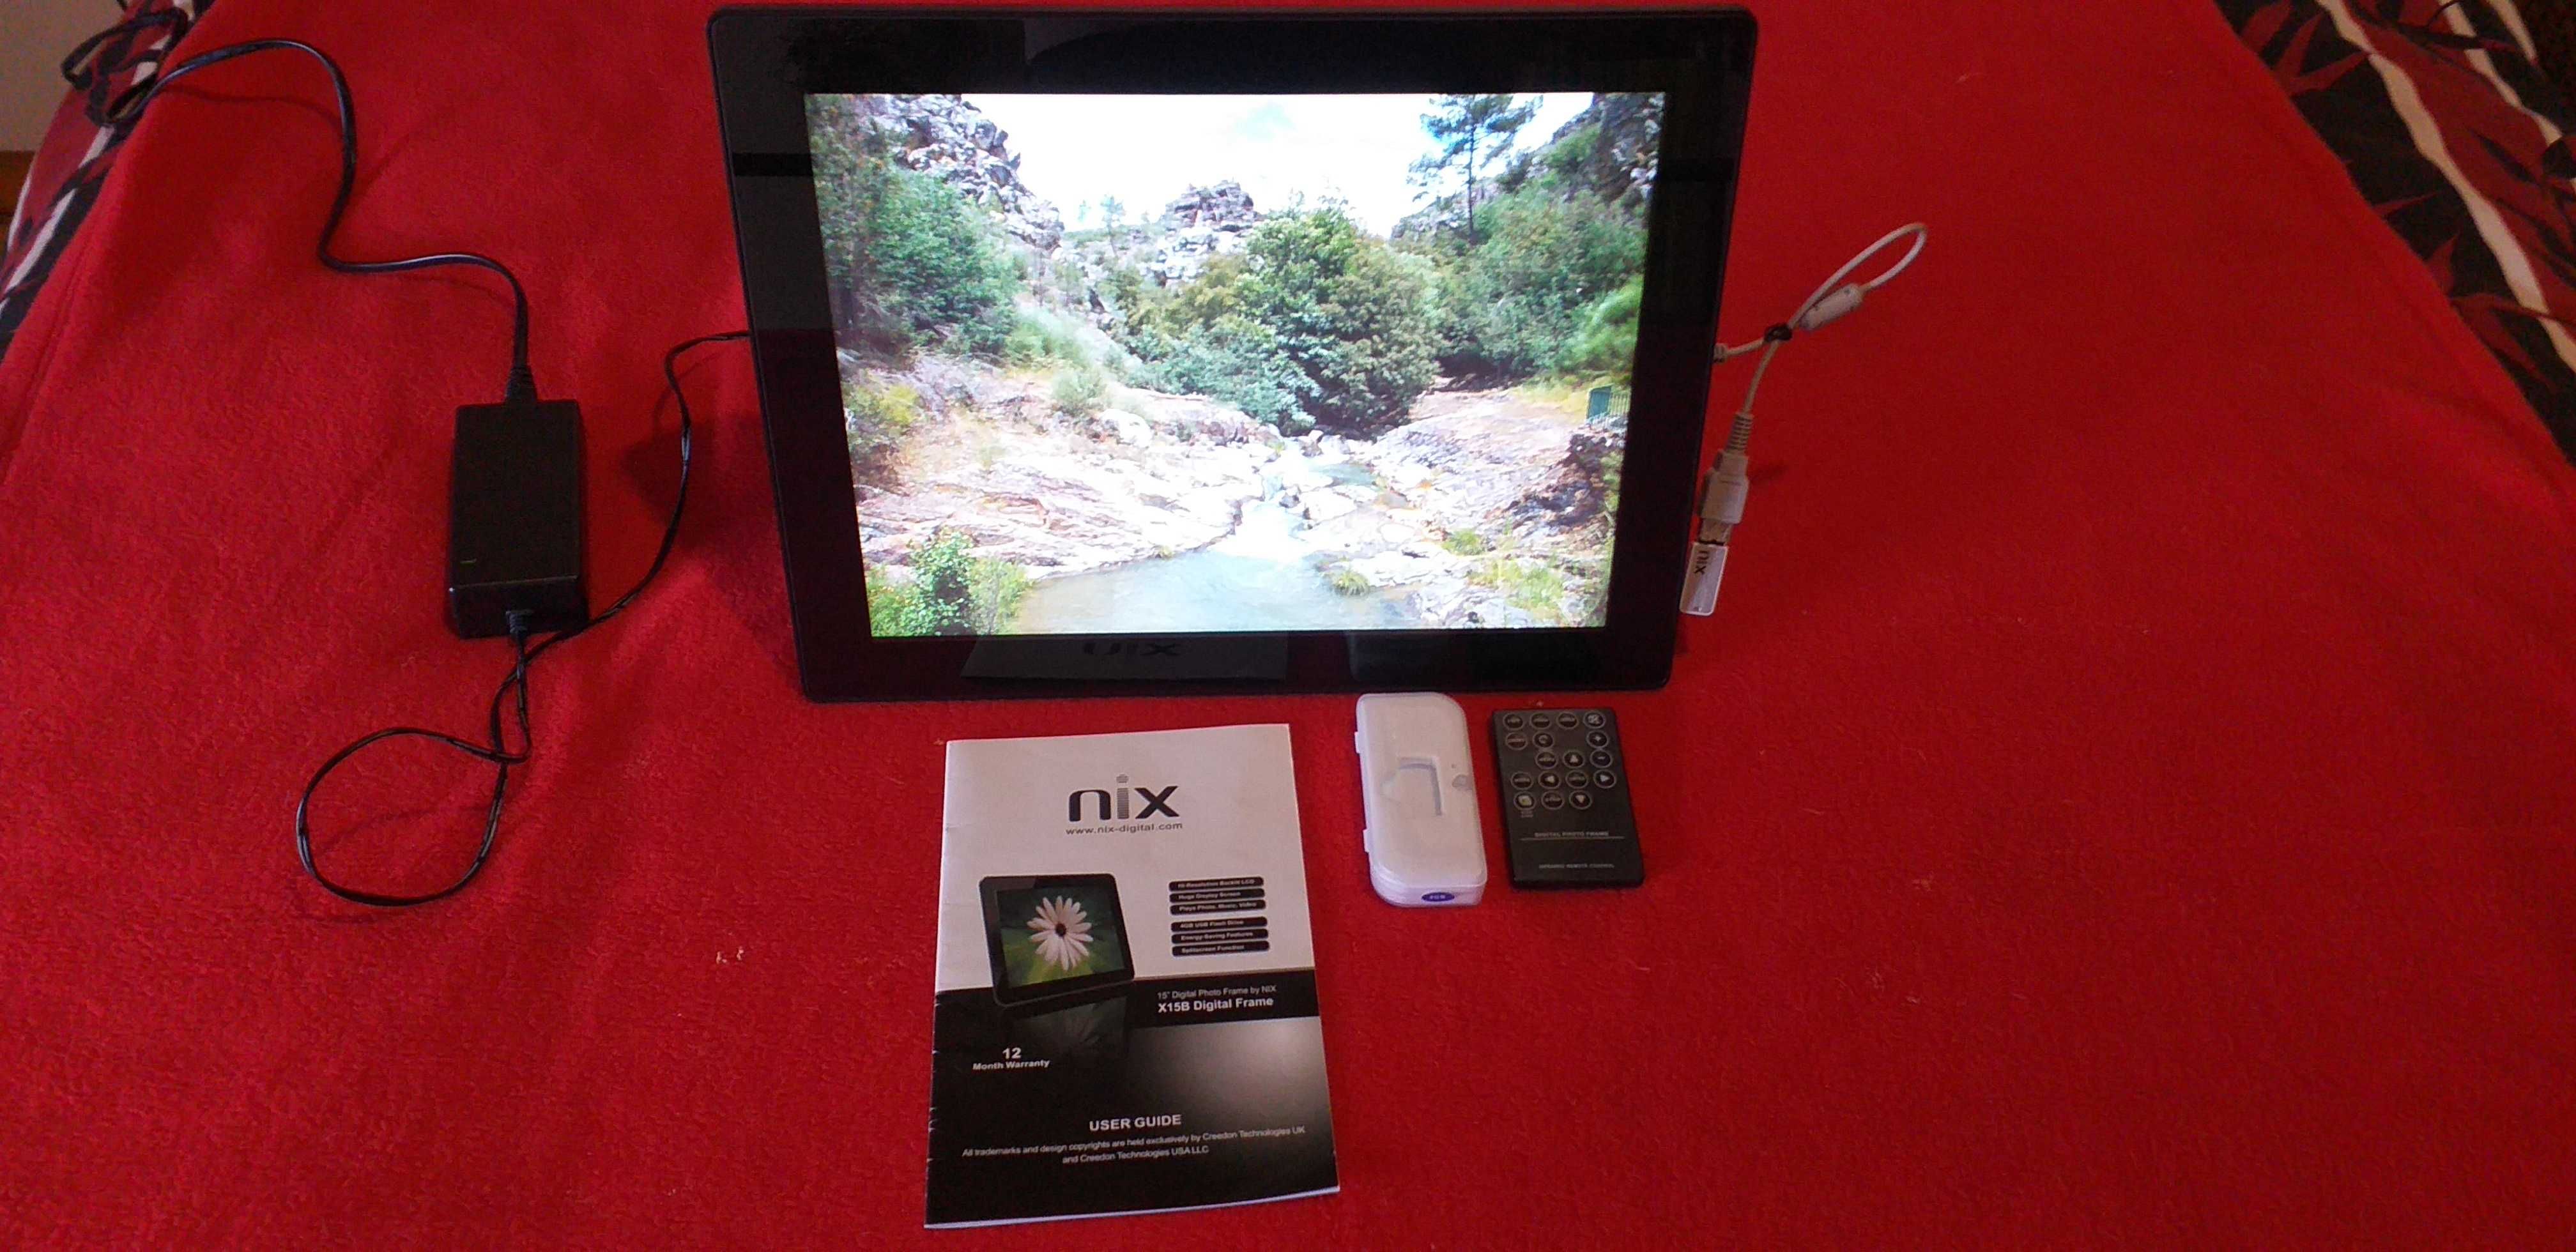 Vendo Moldura Digital “NIX” com visor LCD de 15”. Seixal, Arrentela E  Aldeia De Paio Pires • OLX Portugal